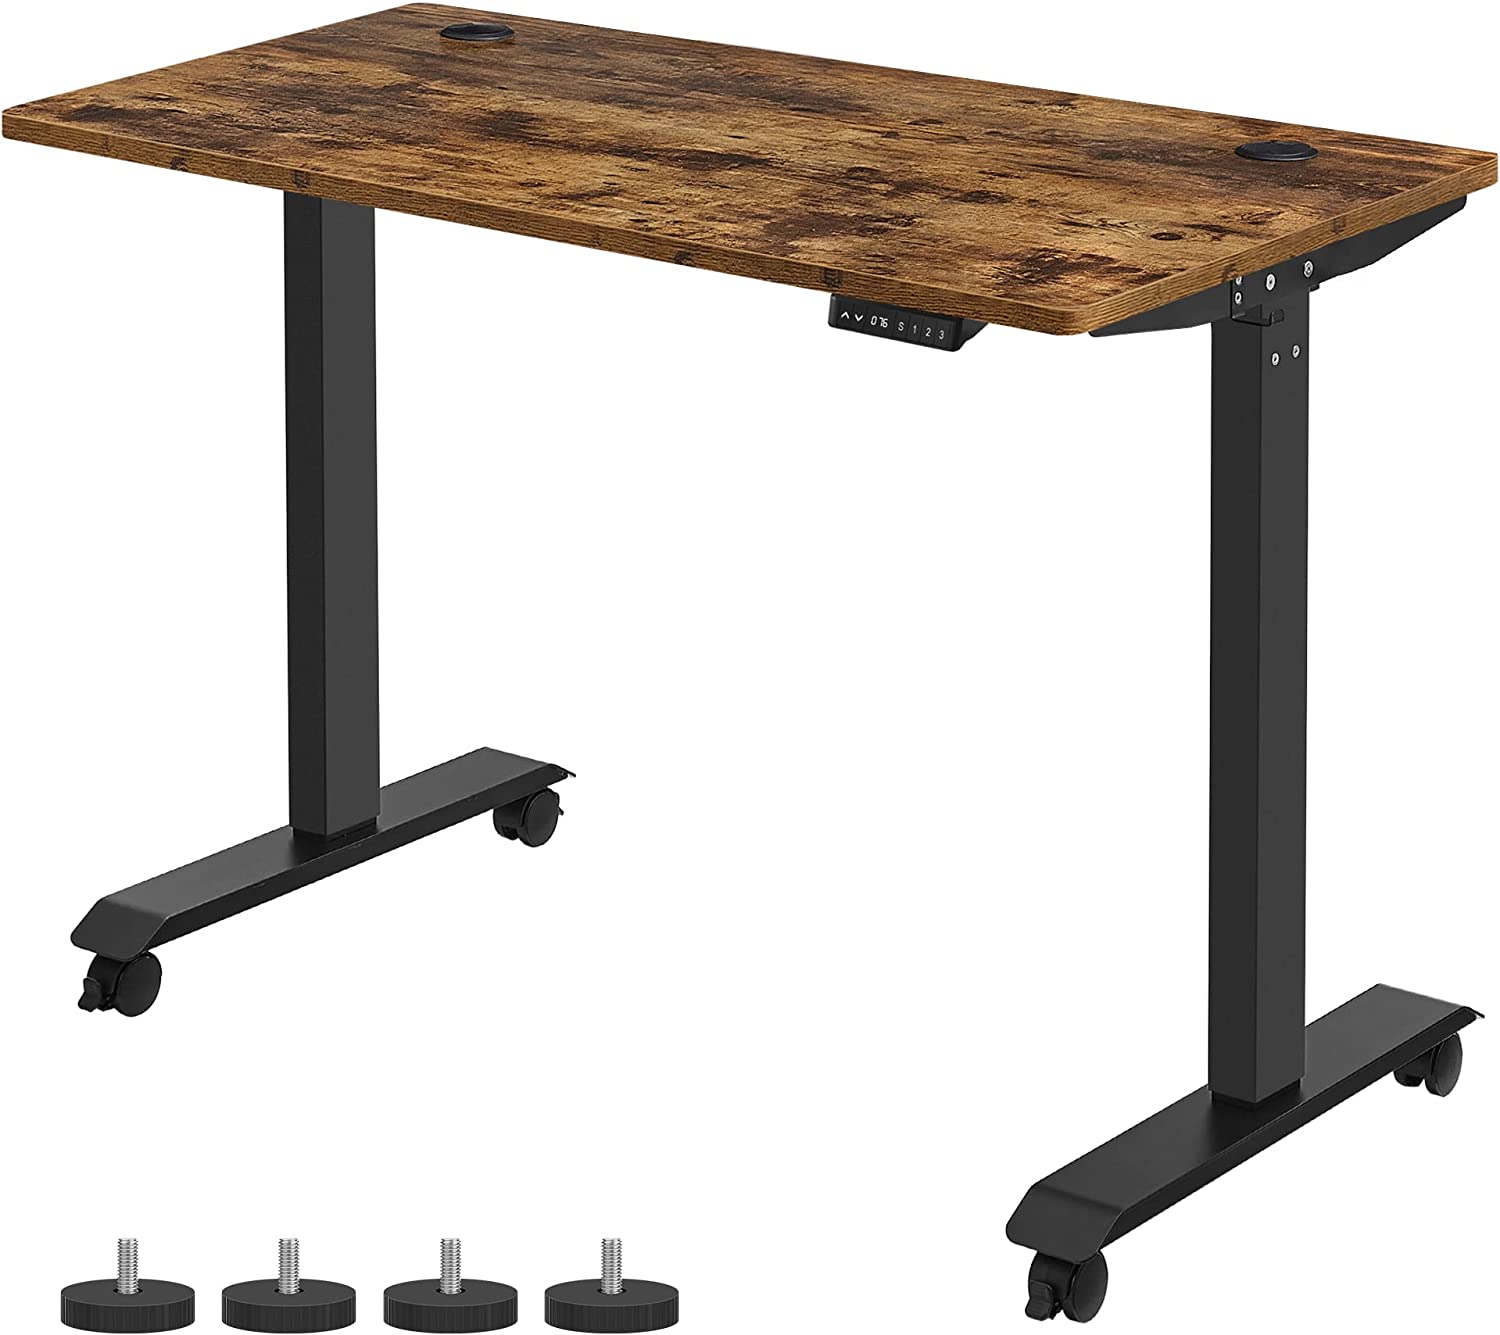 Rena Height Adjustable Standing Desk Rustic Wood Top V2